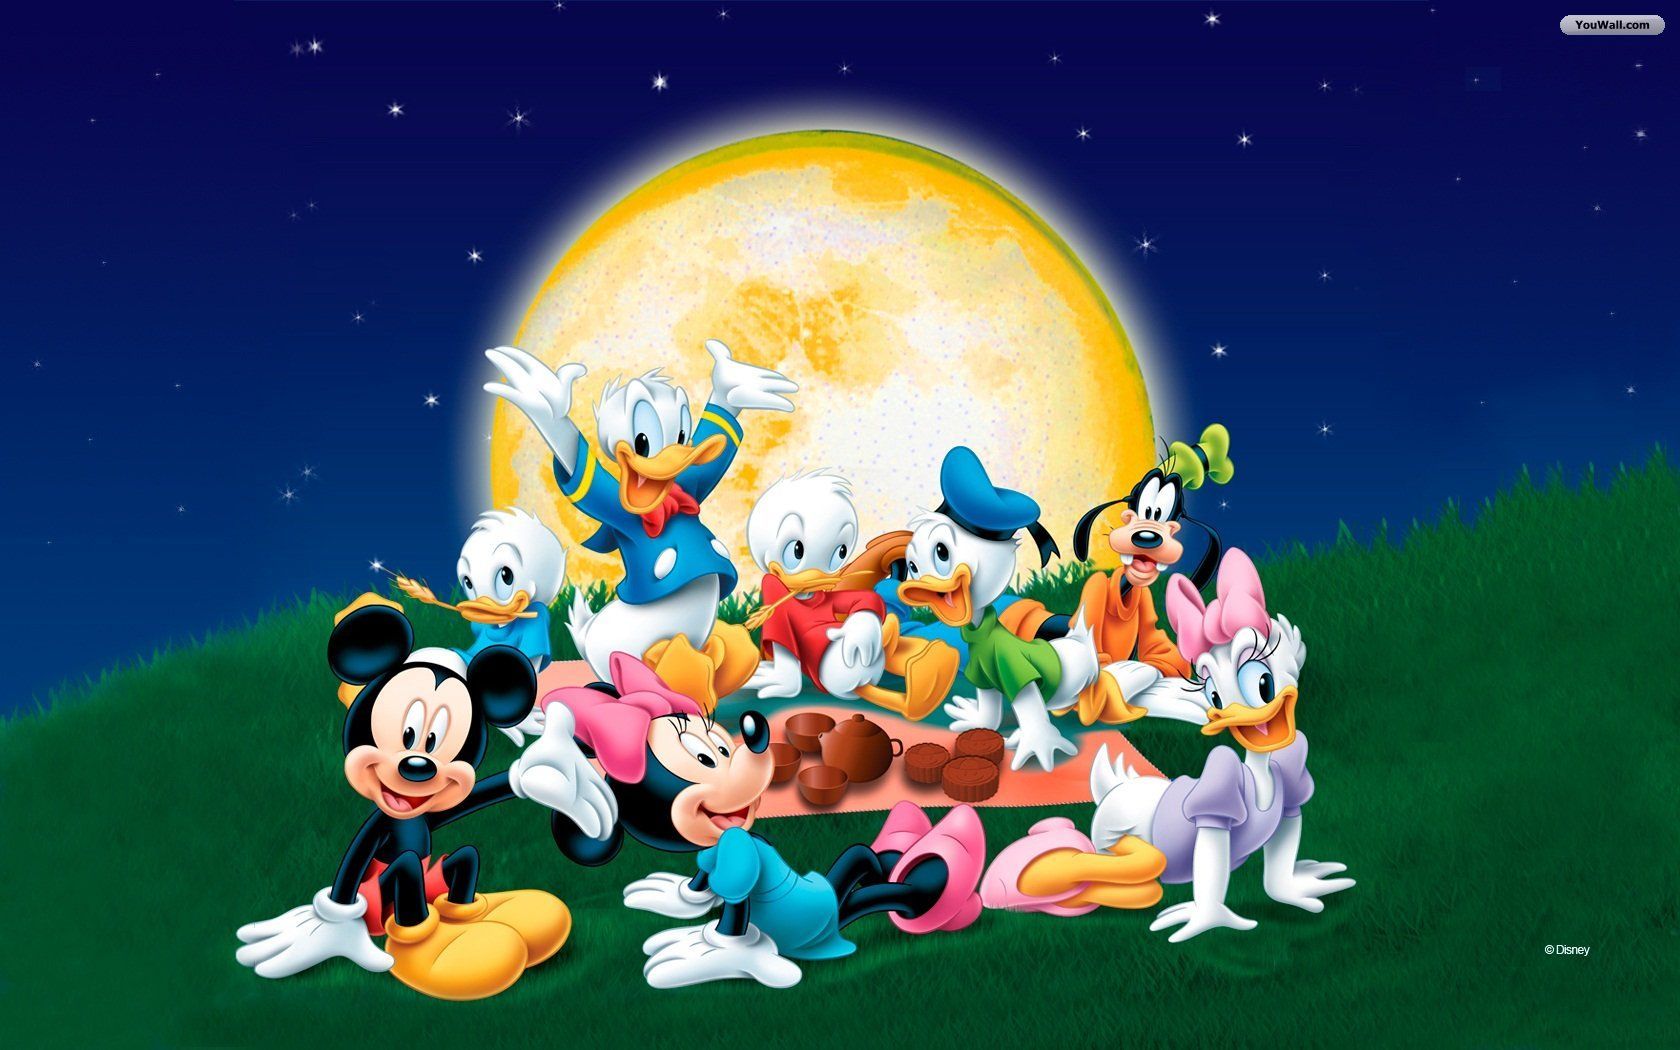 Free-Disney-Desktop-Backgrounds-Images.jpg